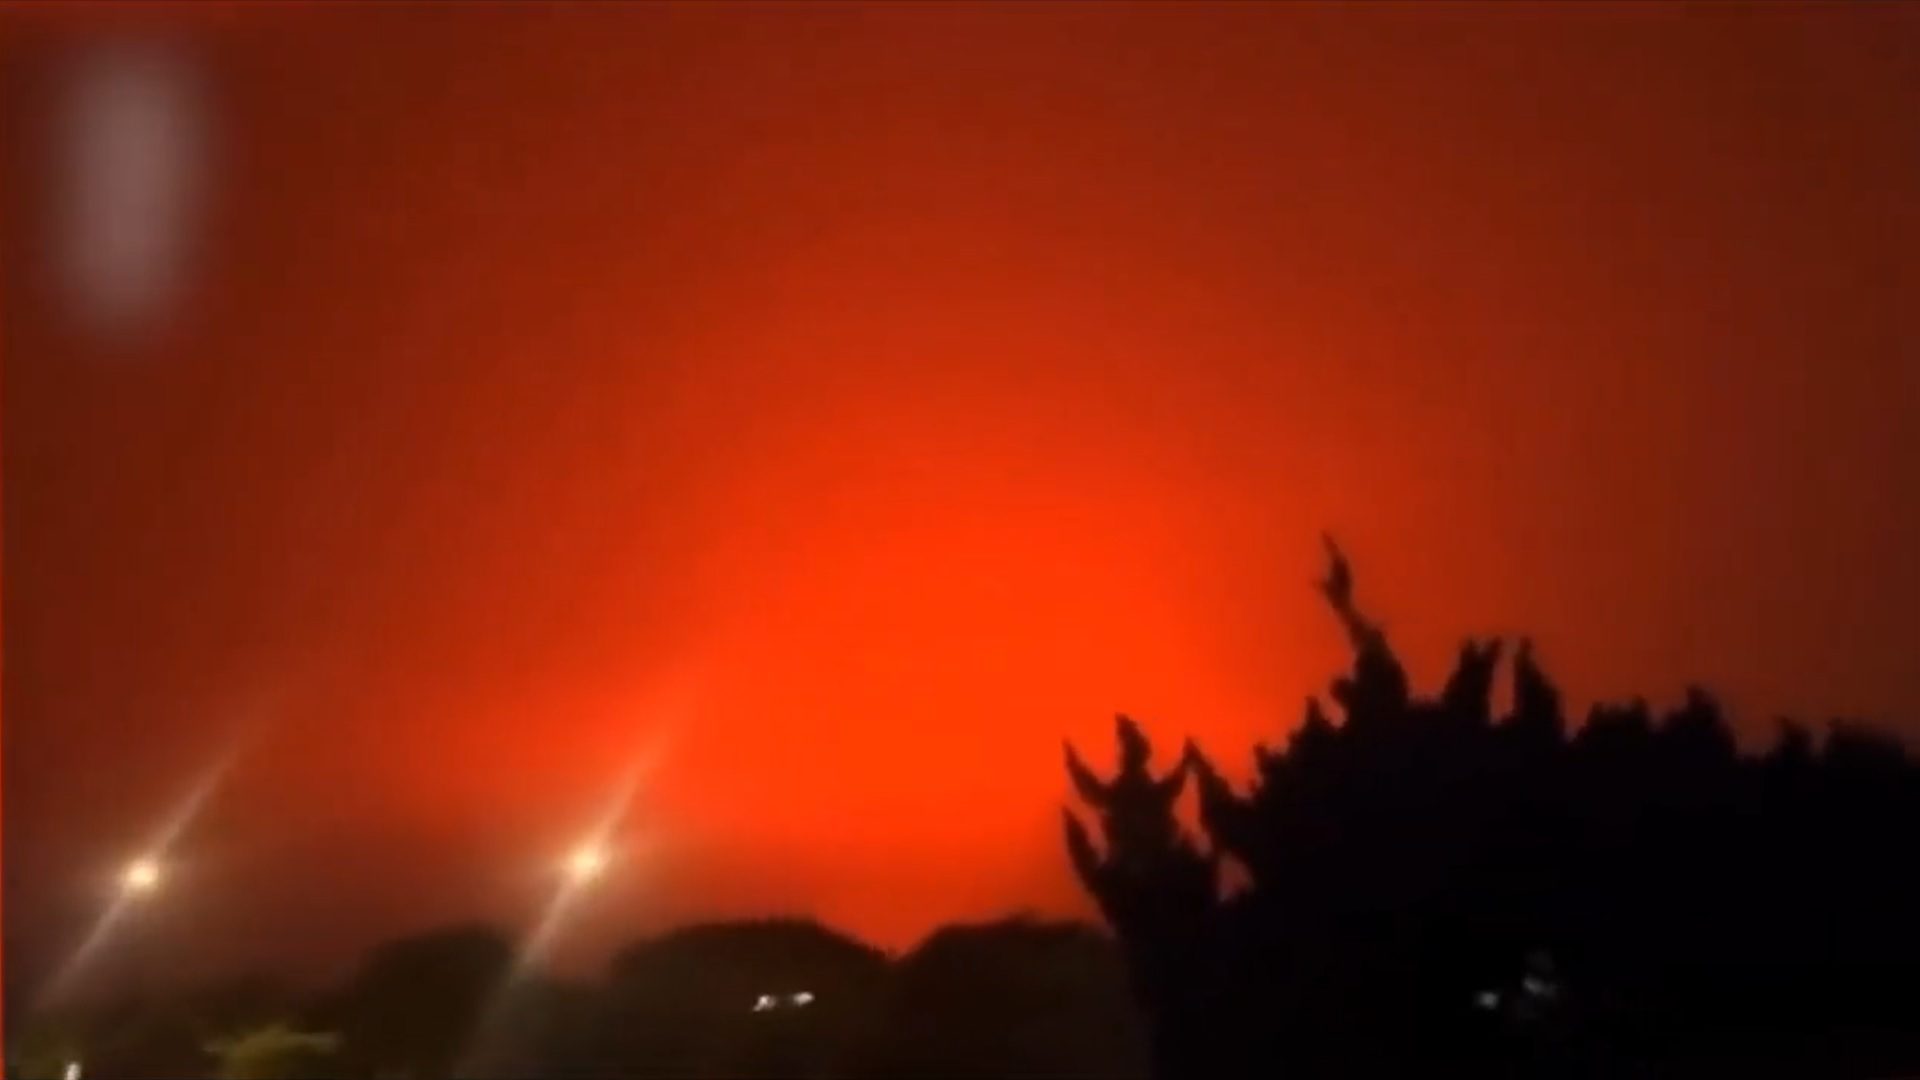 Kísérteties, vörös árnyalatot öltött az ég egy Kínai város felett